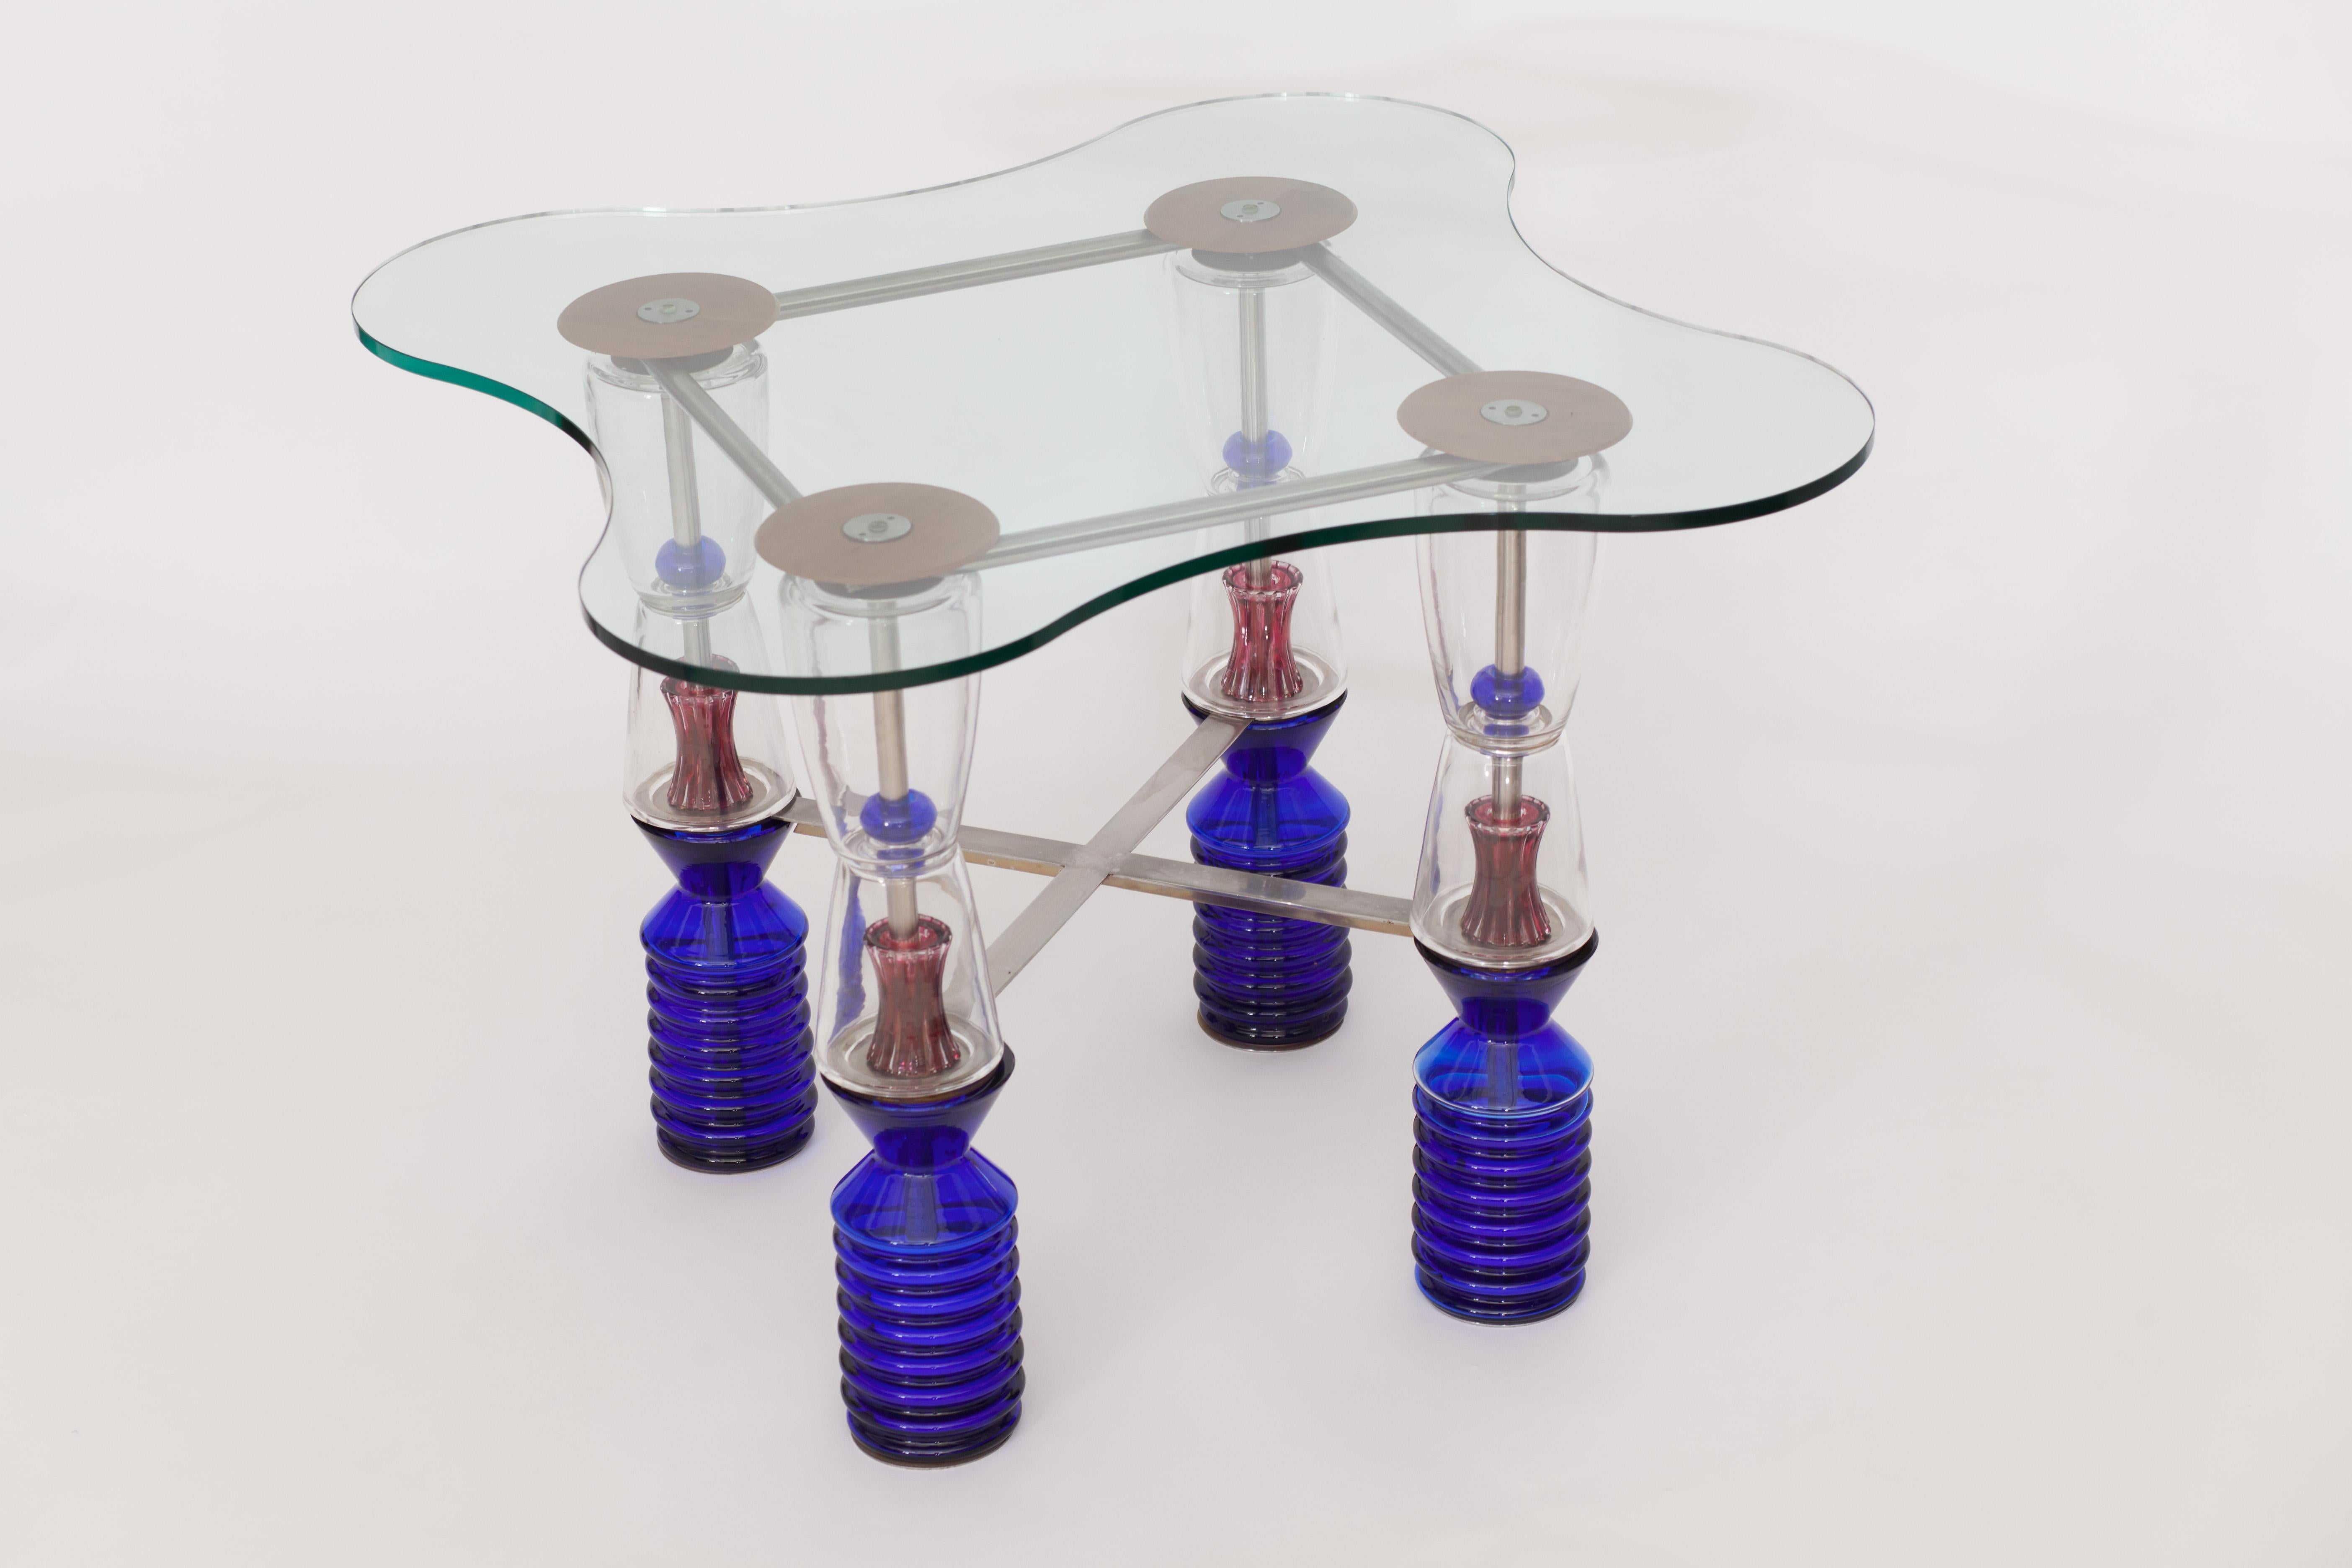 Van Praet & Val Saint lambert Einzigartiger Spieltisch aus Kristall

Dieser außergewöhnliche Beistelltisch, der sich durch seine geometrischen und organischen Formen und den wohlüberlegten Einsatz von Farbe auszeichnet, wurde in den 1990er Jahren